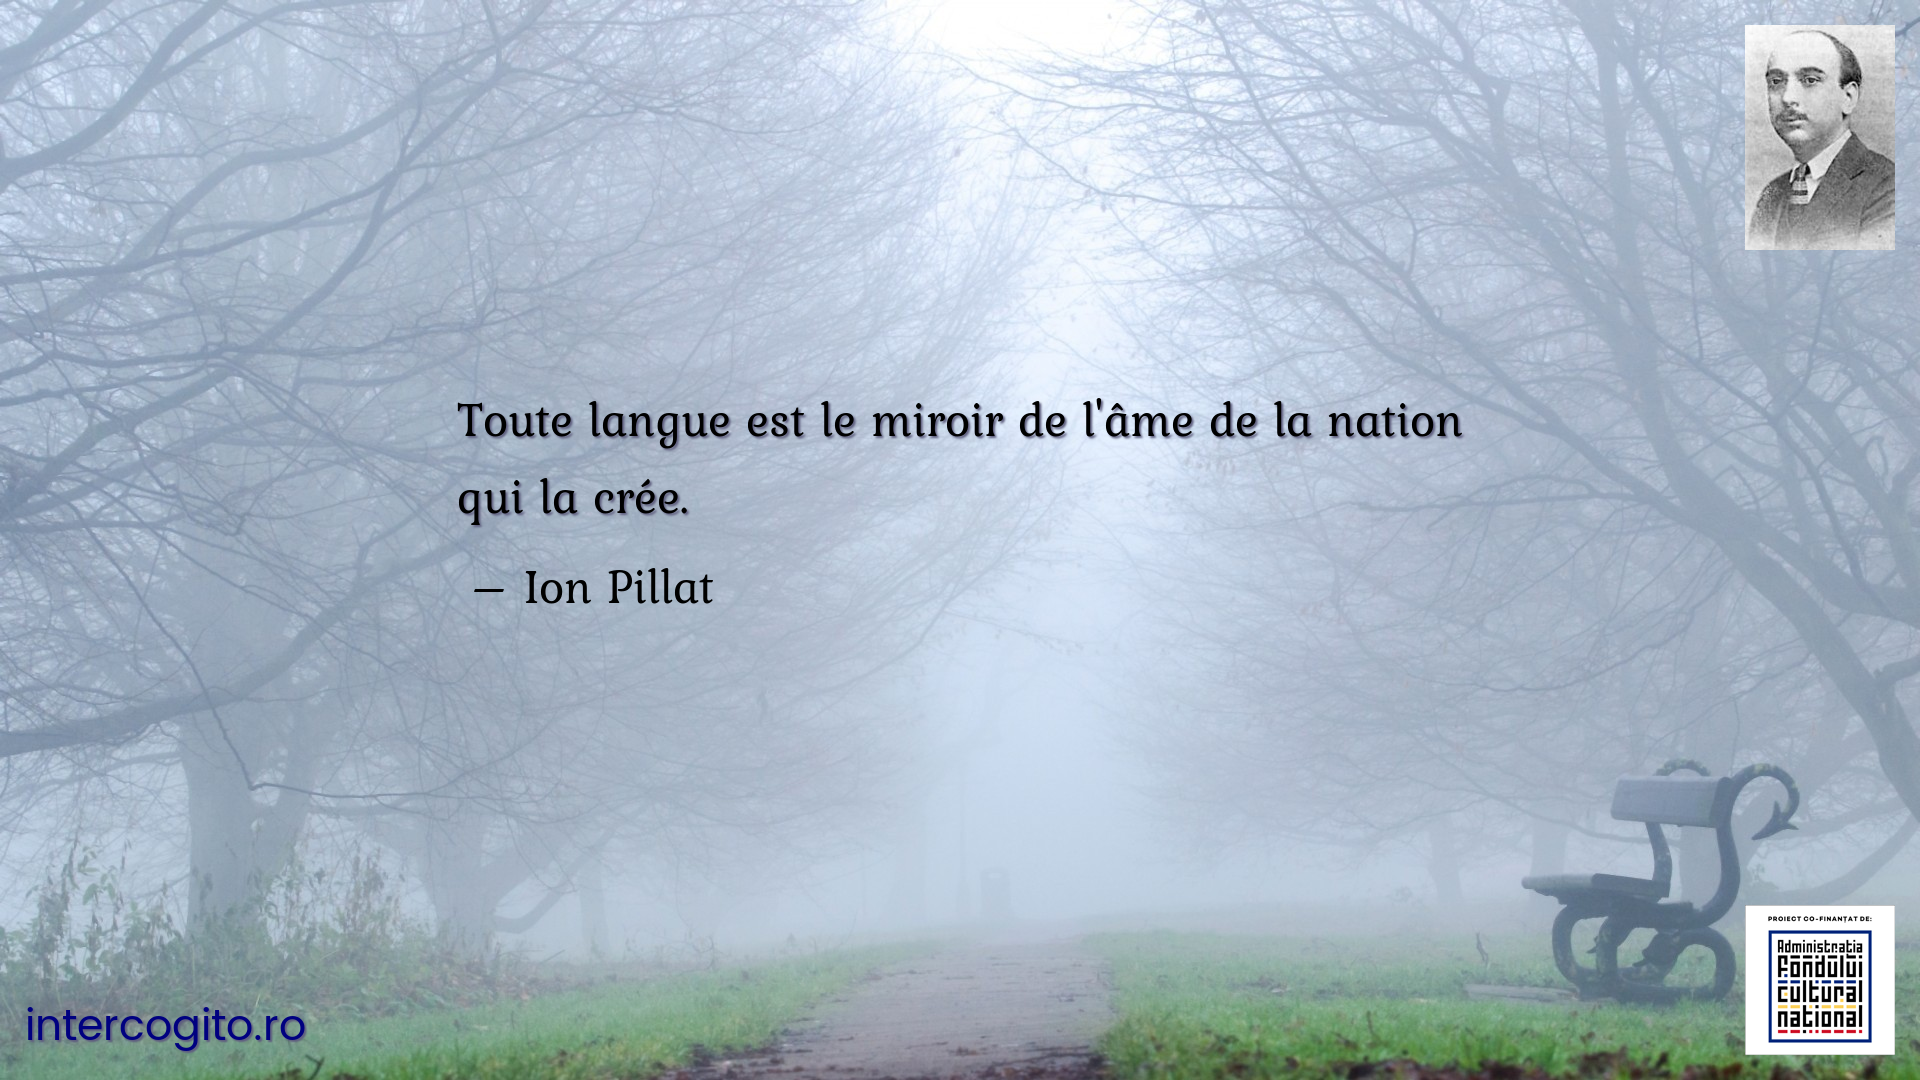 Toute langue est le miroir de l'âme de la nation qui la crée.